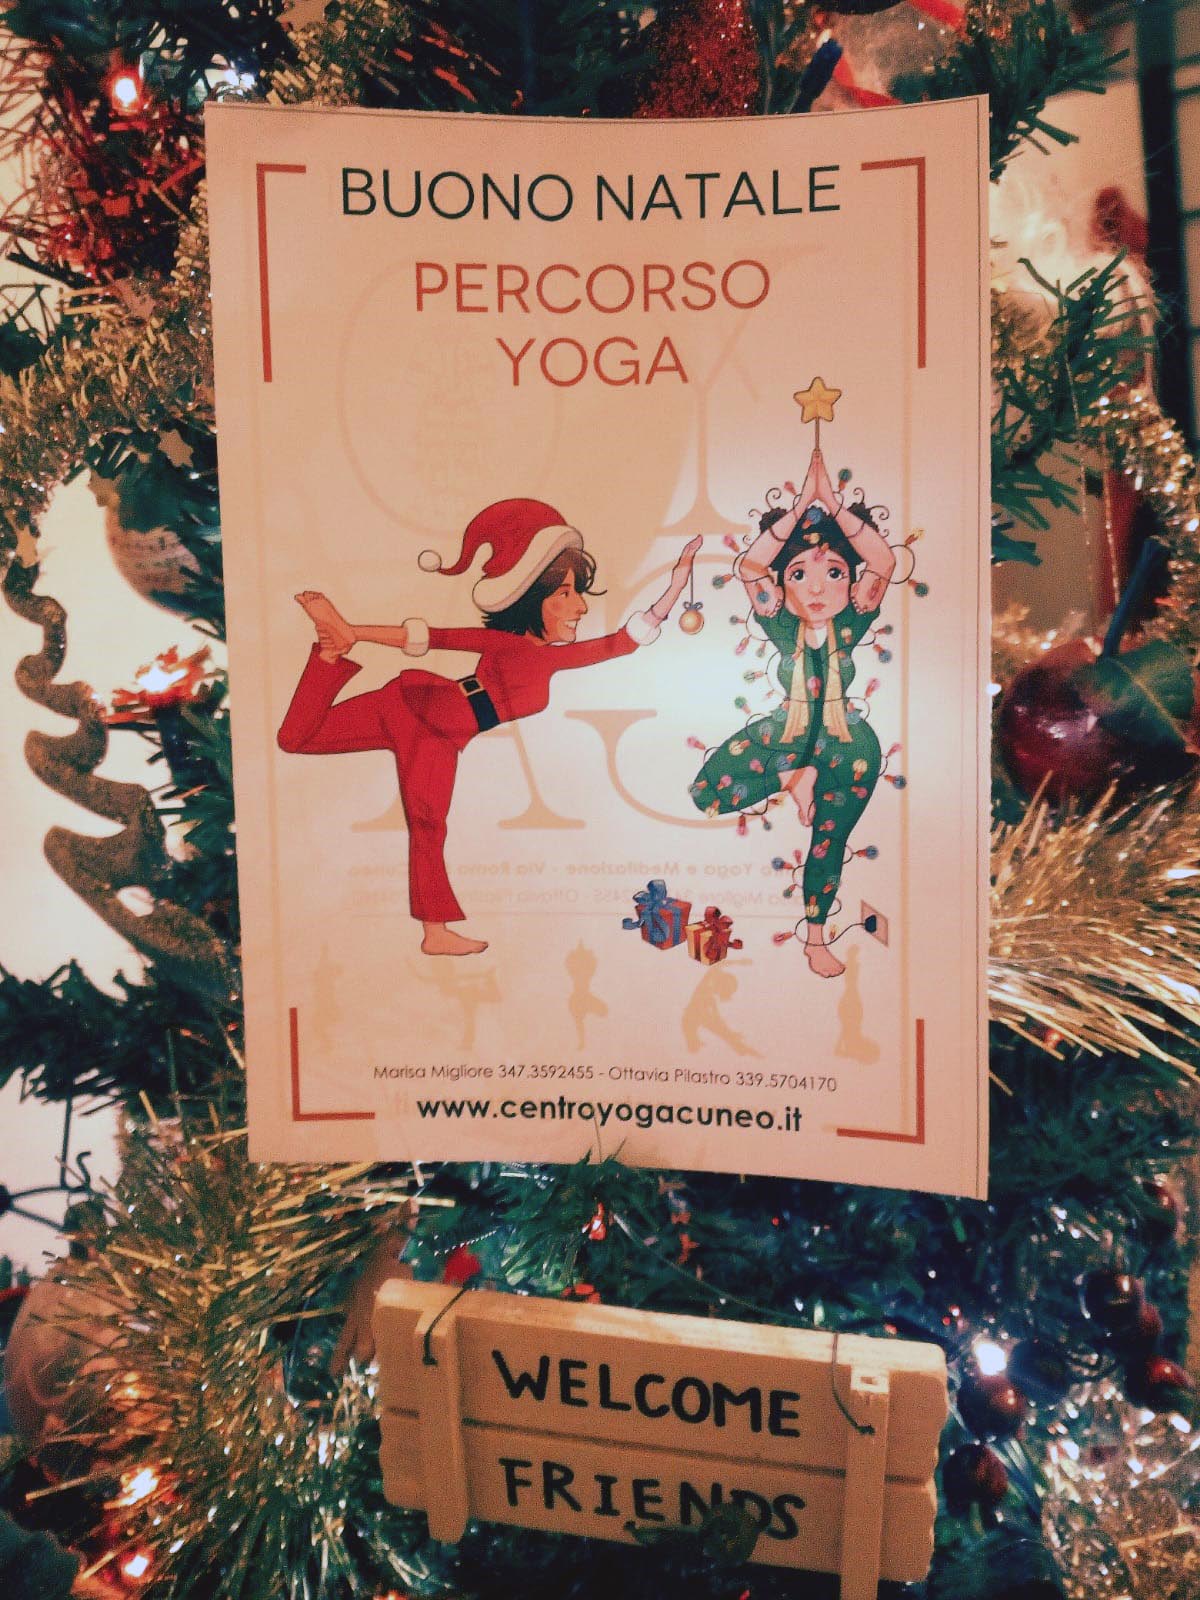 ...a Natale regala... Yoga!